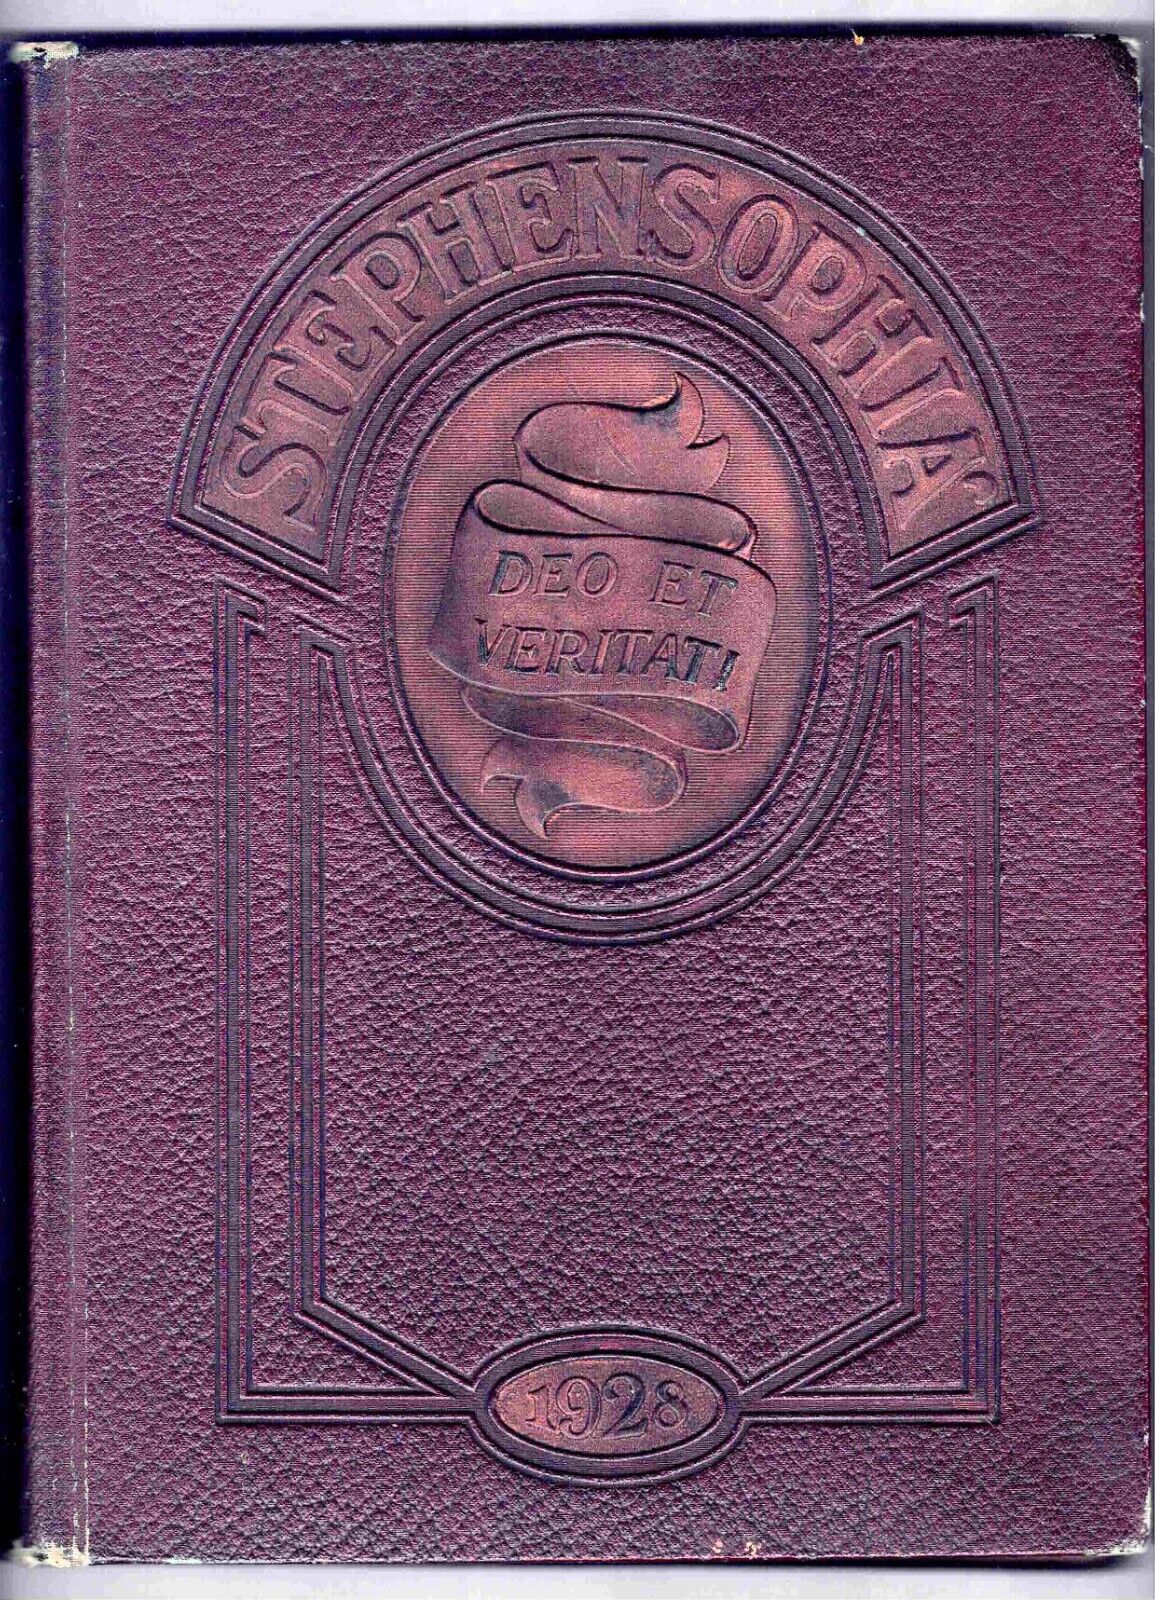 1928 STEPHENS COLLEGE YEARBOOK, STEPHENSOPHIA,  COLUMBIA MISSOURI